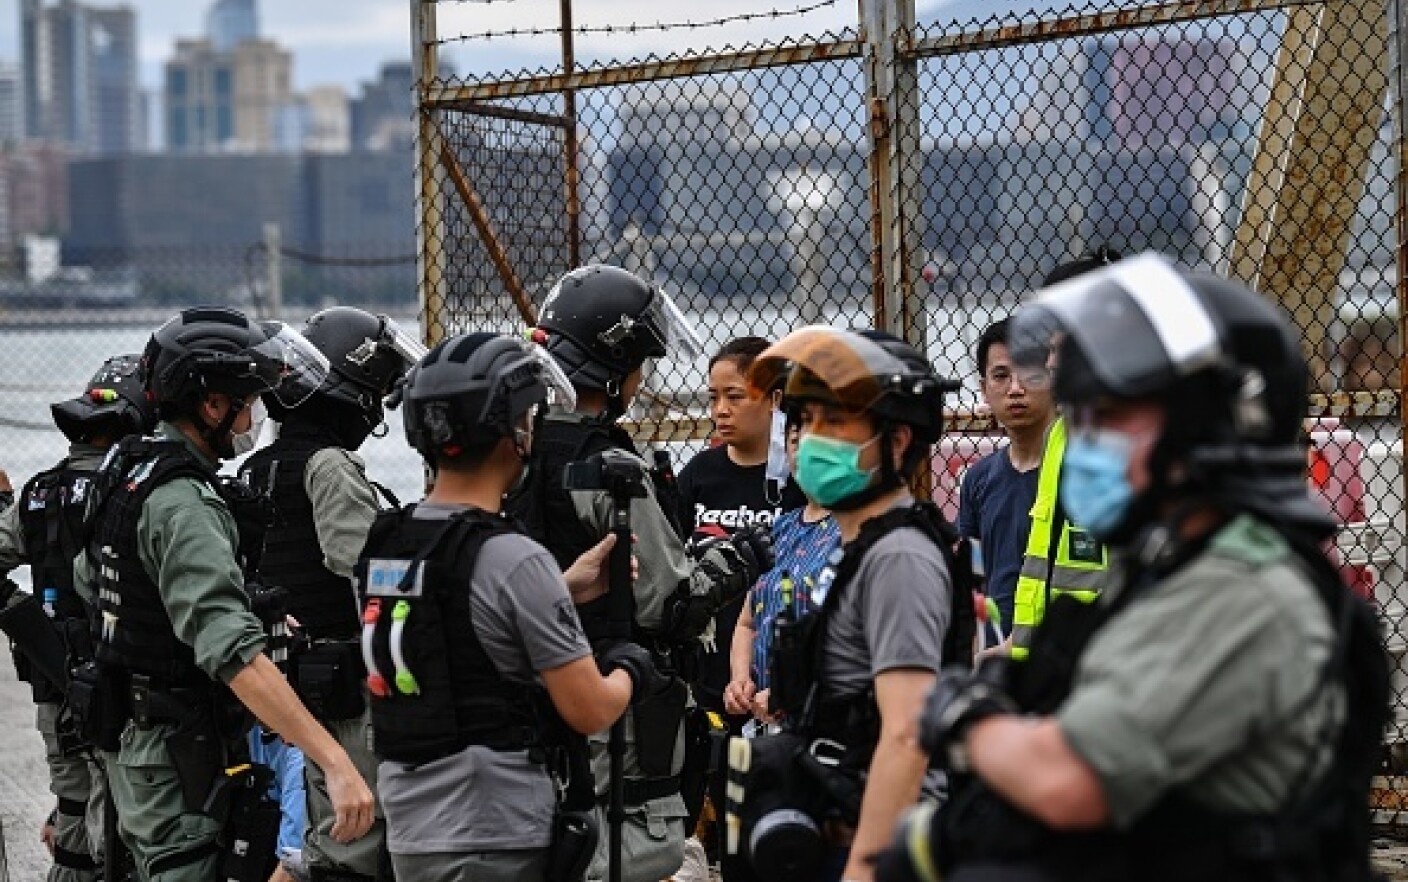 Proteste în Hong Kong din cauza legii securităţii naţionale. Poliţia a intervenit cu gaze lacrimogene. GALERIE FOTO - 4